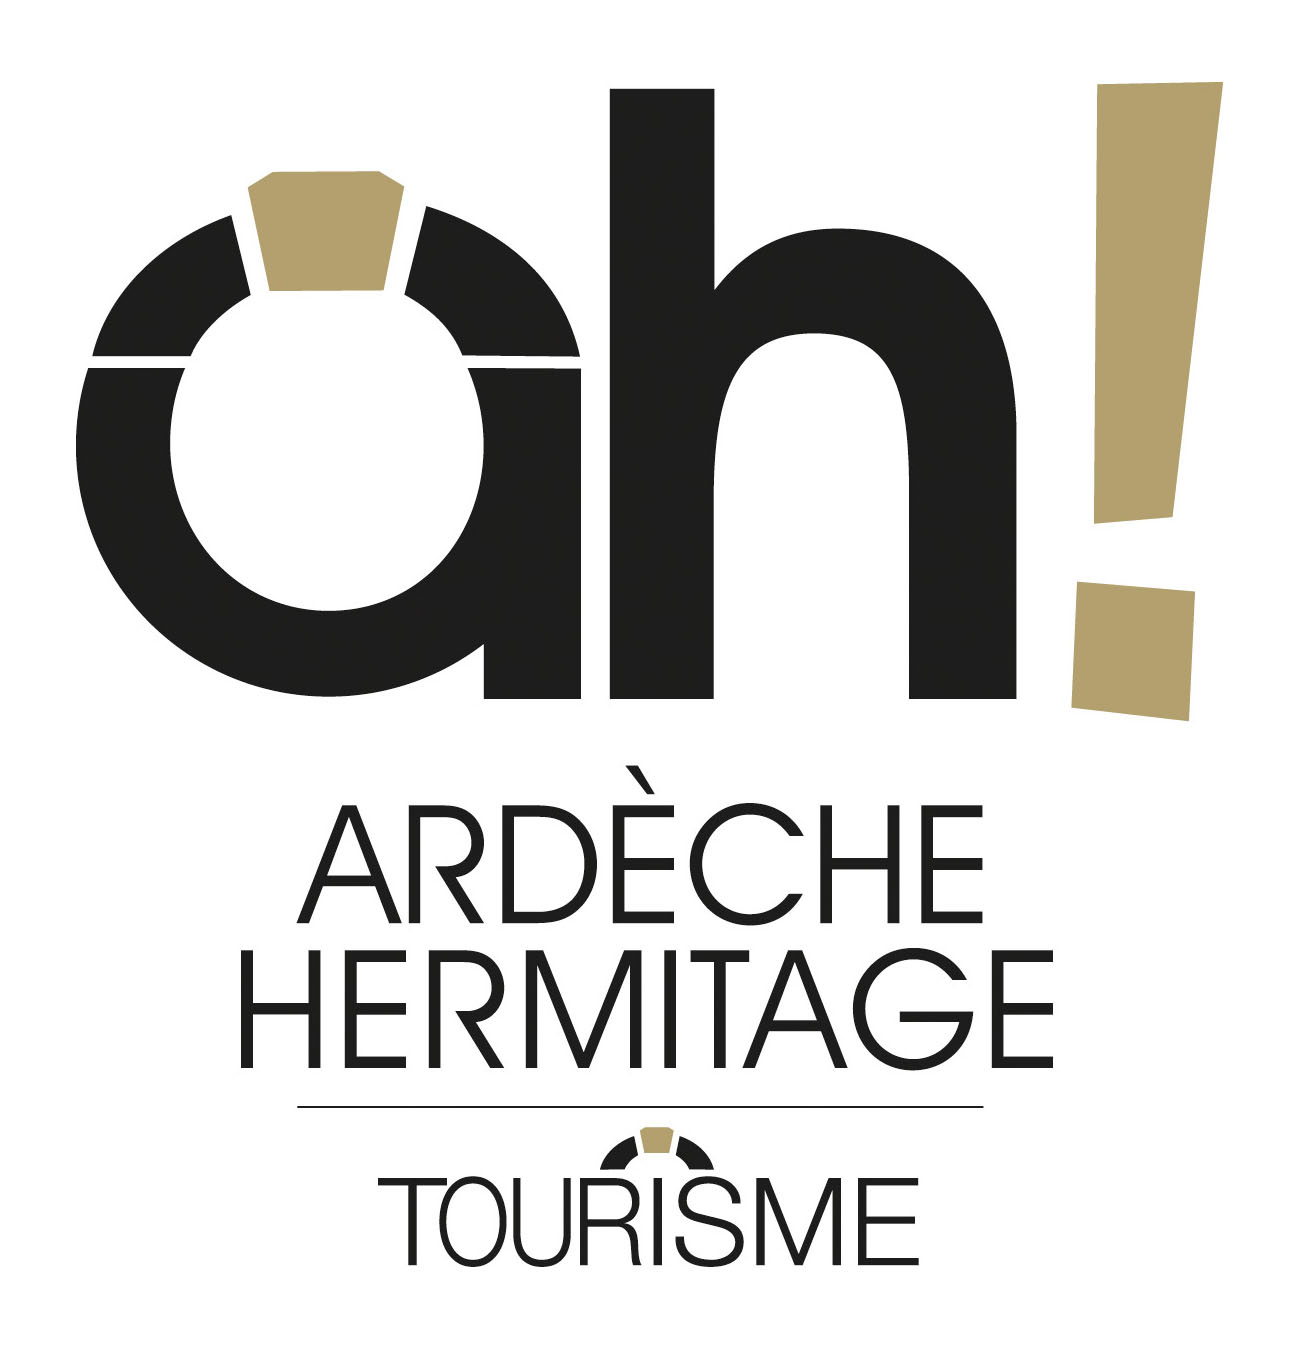 Cliquez pour voir le site internet d'Ardèche Hermitage Tourisme